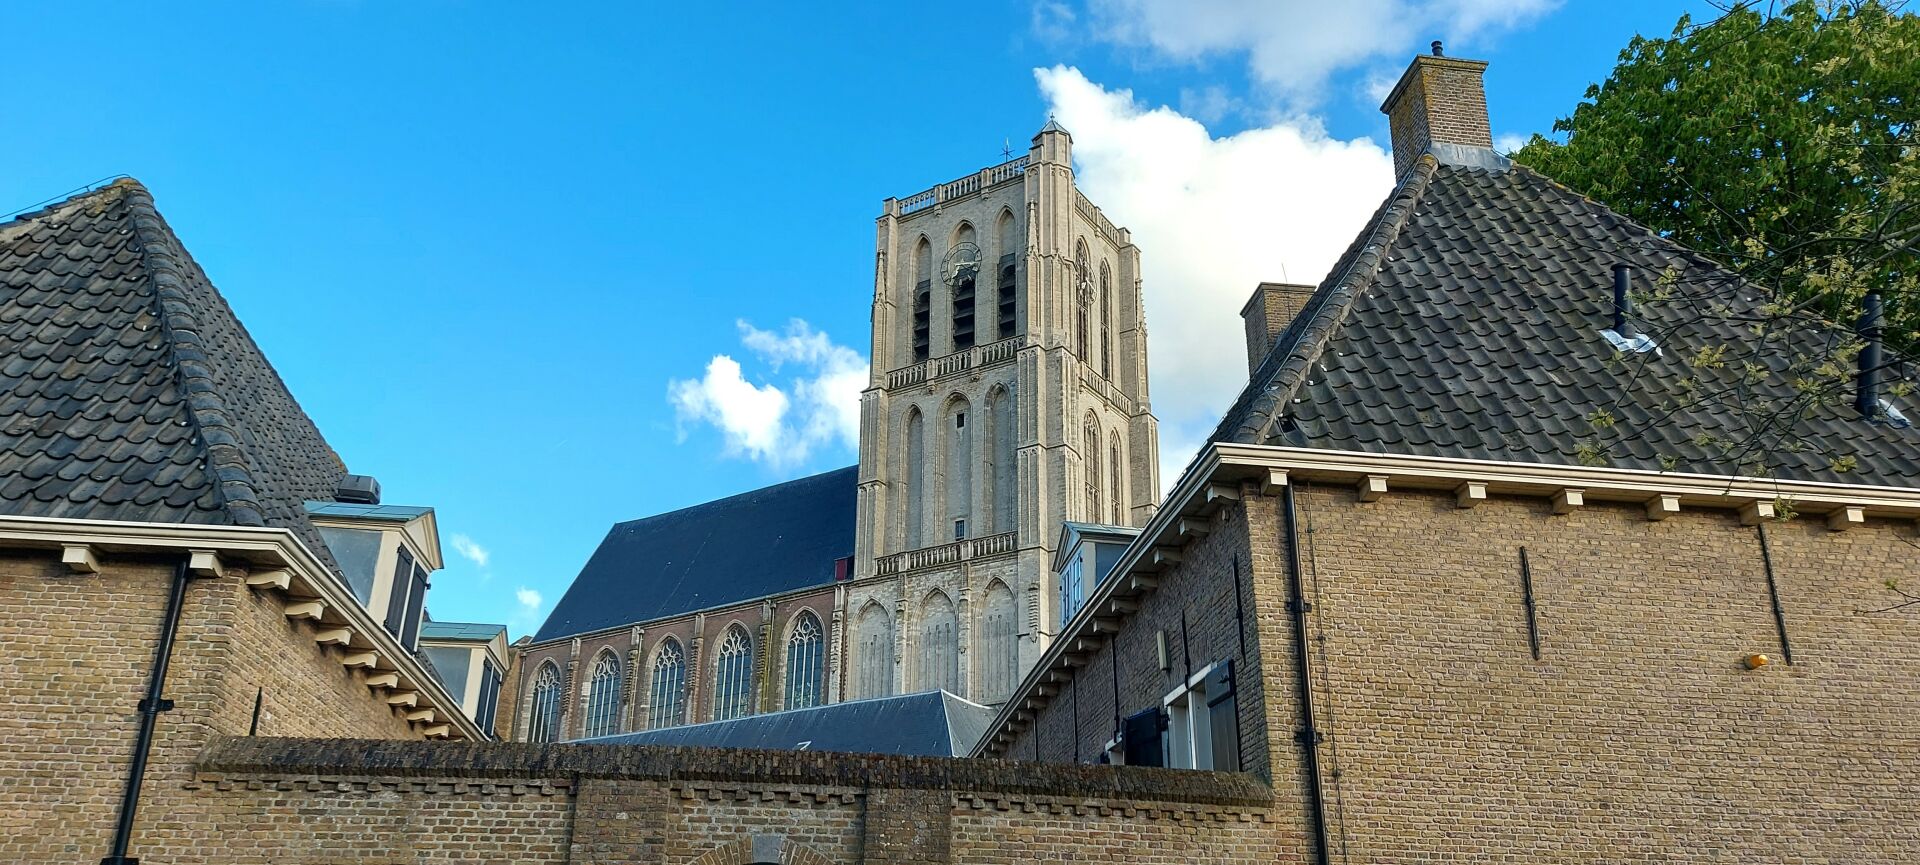 St. Catharijnekerk Brielle - Voorne-Putten